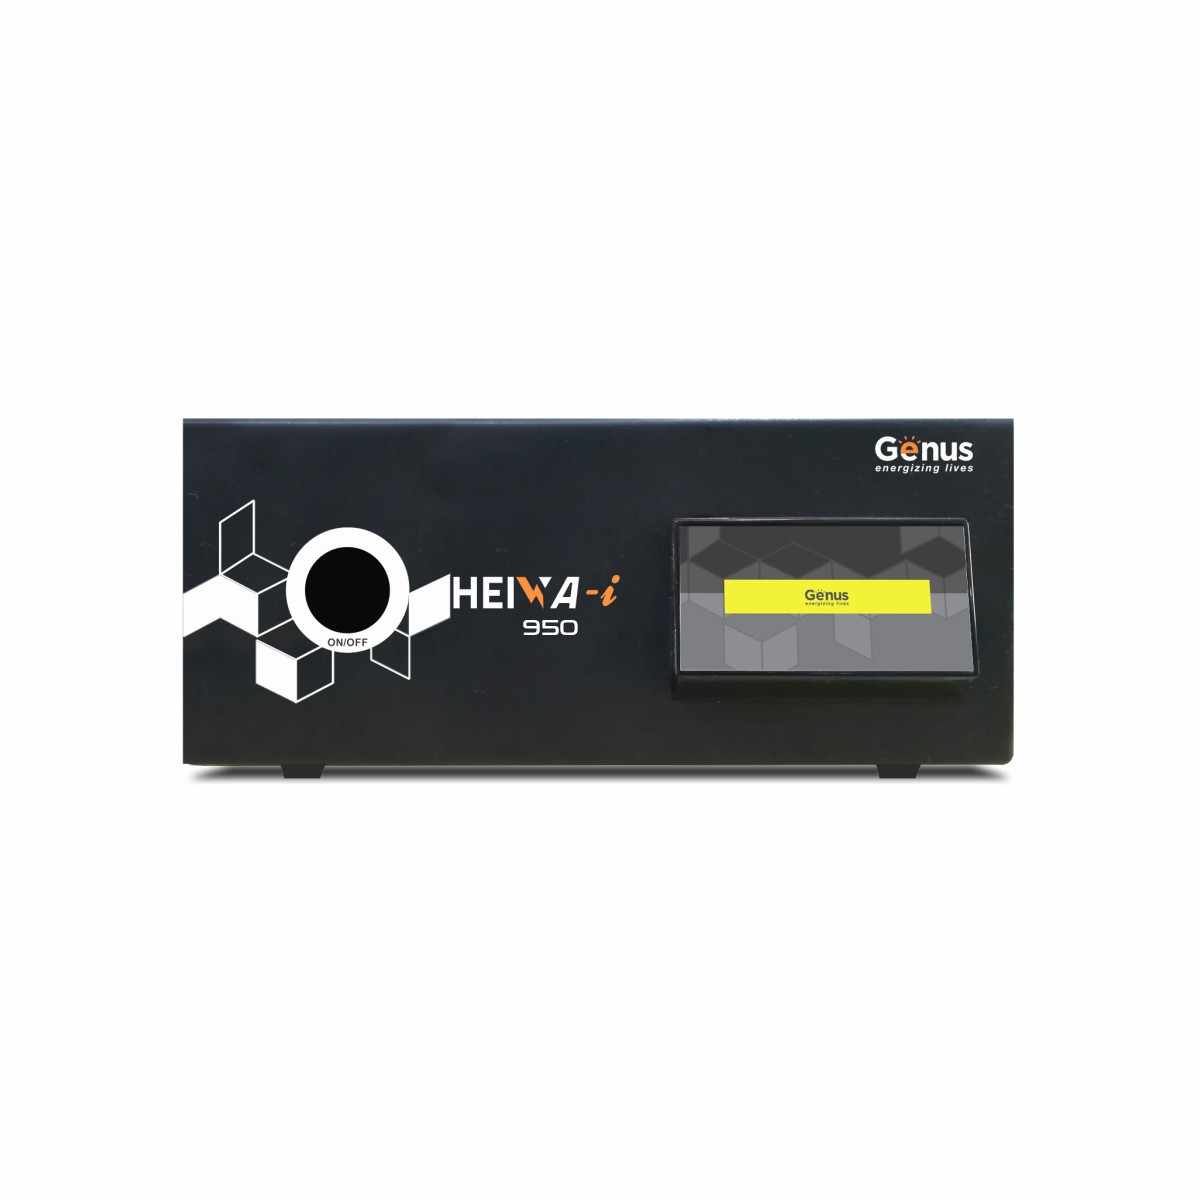 Genus Hiewa 12 V 950 Sine Wave UPS Inverter for Home